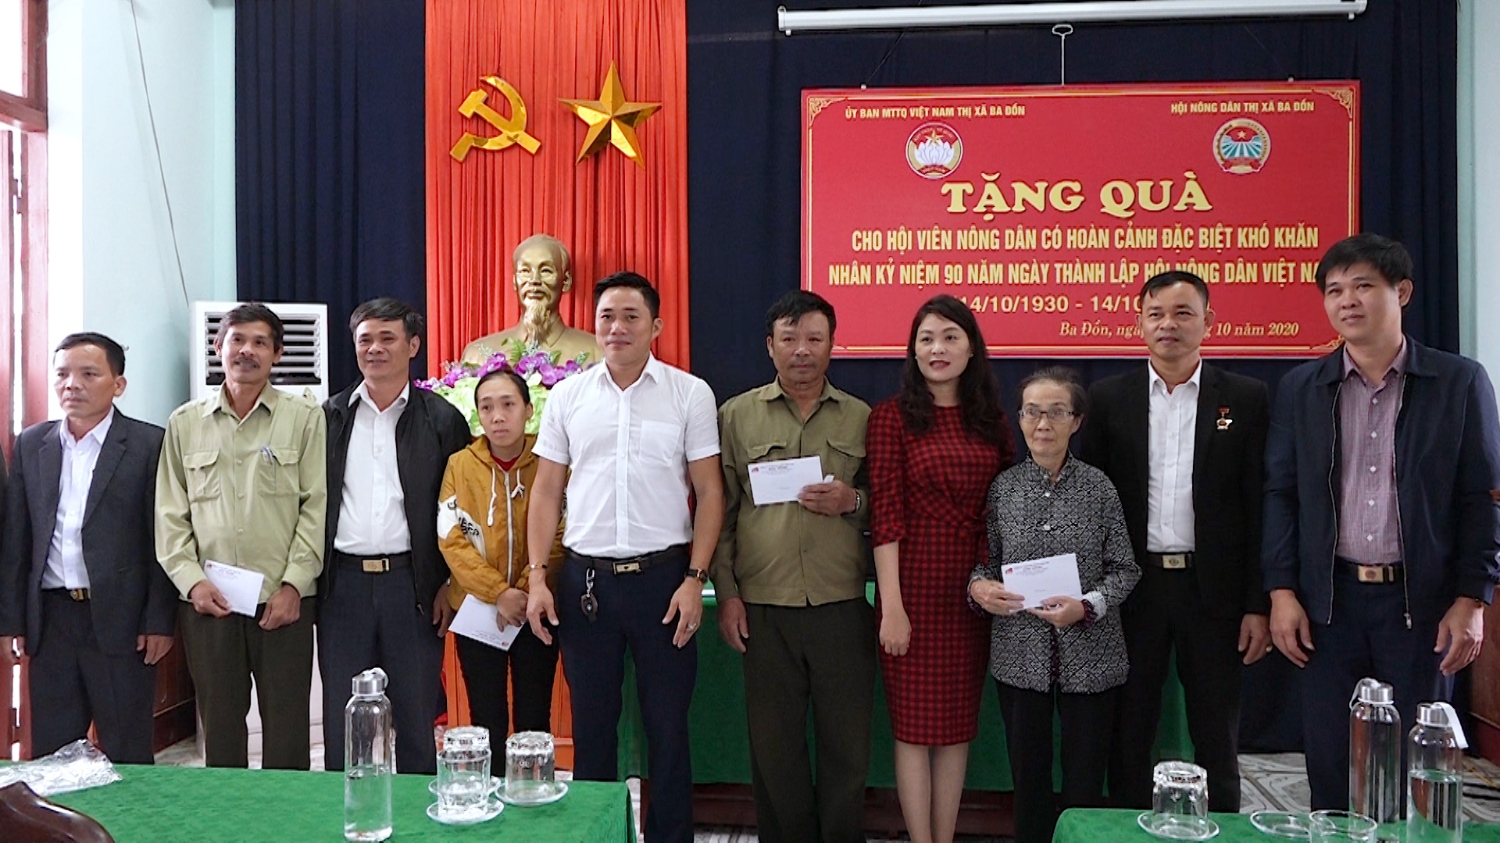 Trao quà cho hội viên có hoàn cảnh khó khăn nhân kỷ niệm 90 năm ngày thành lập Hội nông dân Việt Nam.